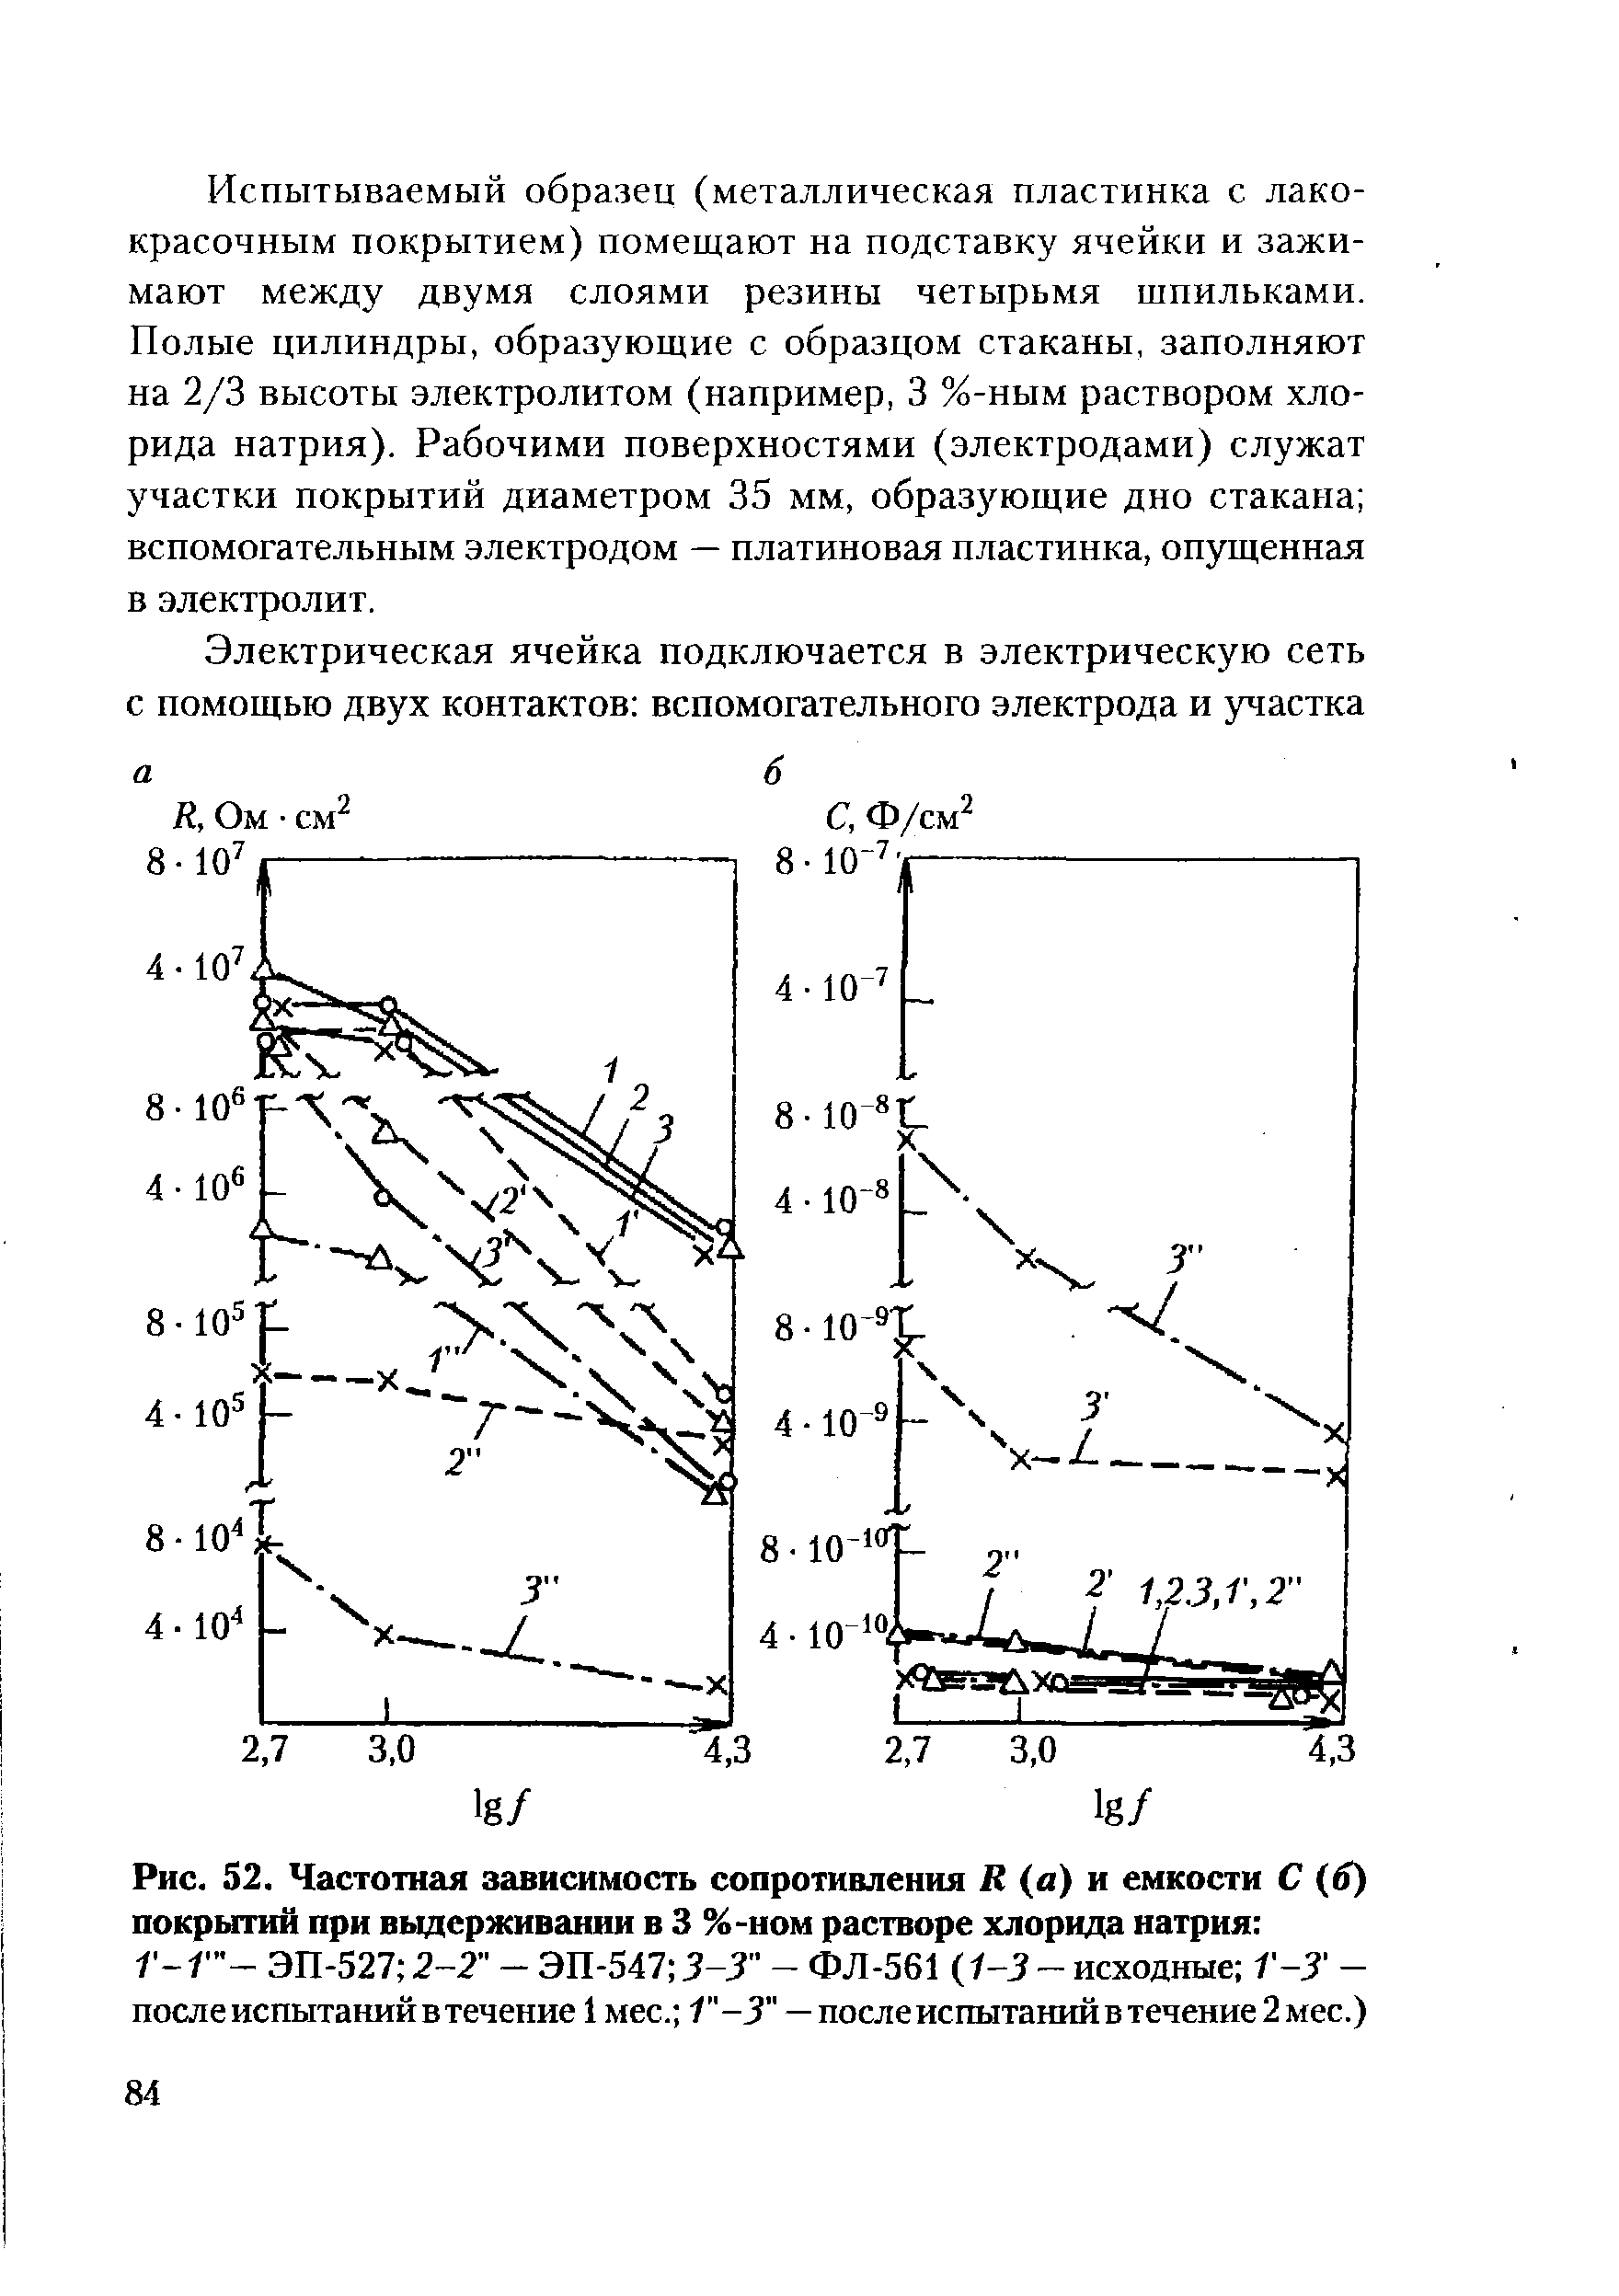 Рис. 52, Частотная <a href="/info/167679">зависимость сопротивления</a> R (а) и емкости С (б) покрытий при выдерживании в 3 %-ном растворе хлорида натрия 
